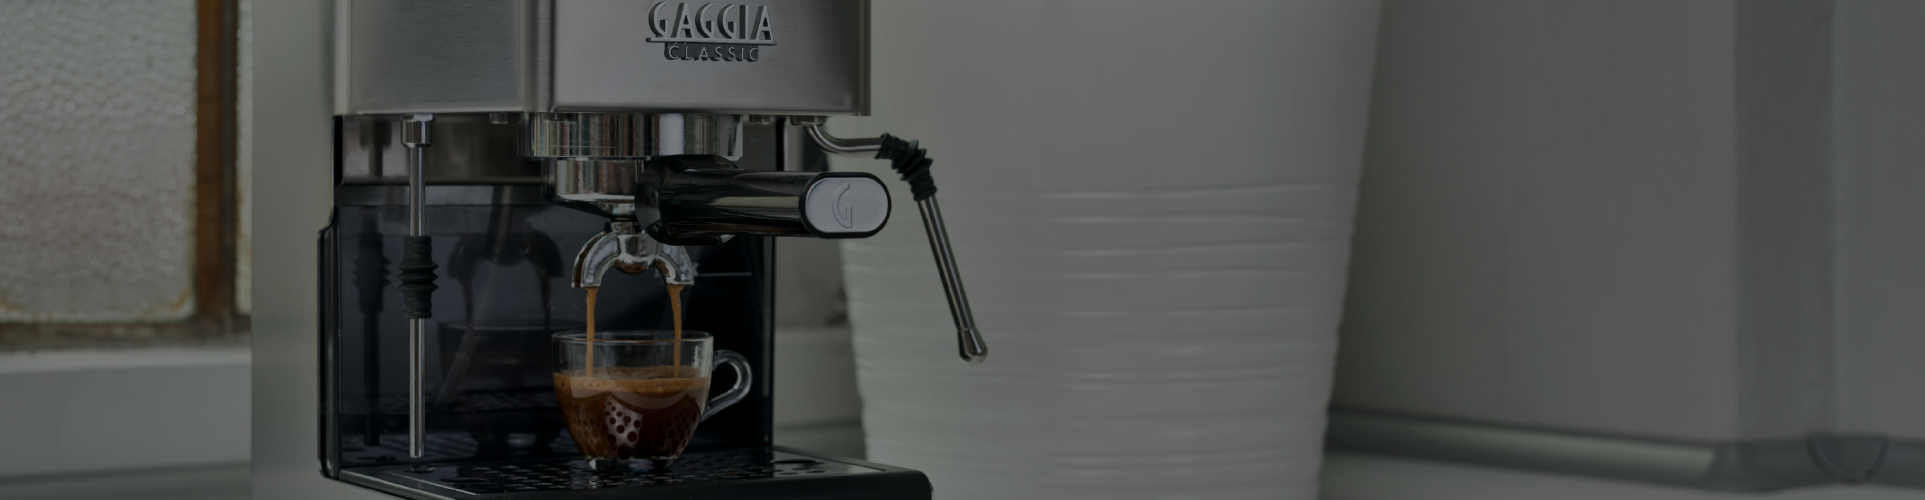 La máquina ideal para preparar café como un profesional desde casa: Gaggia Classic